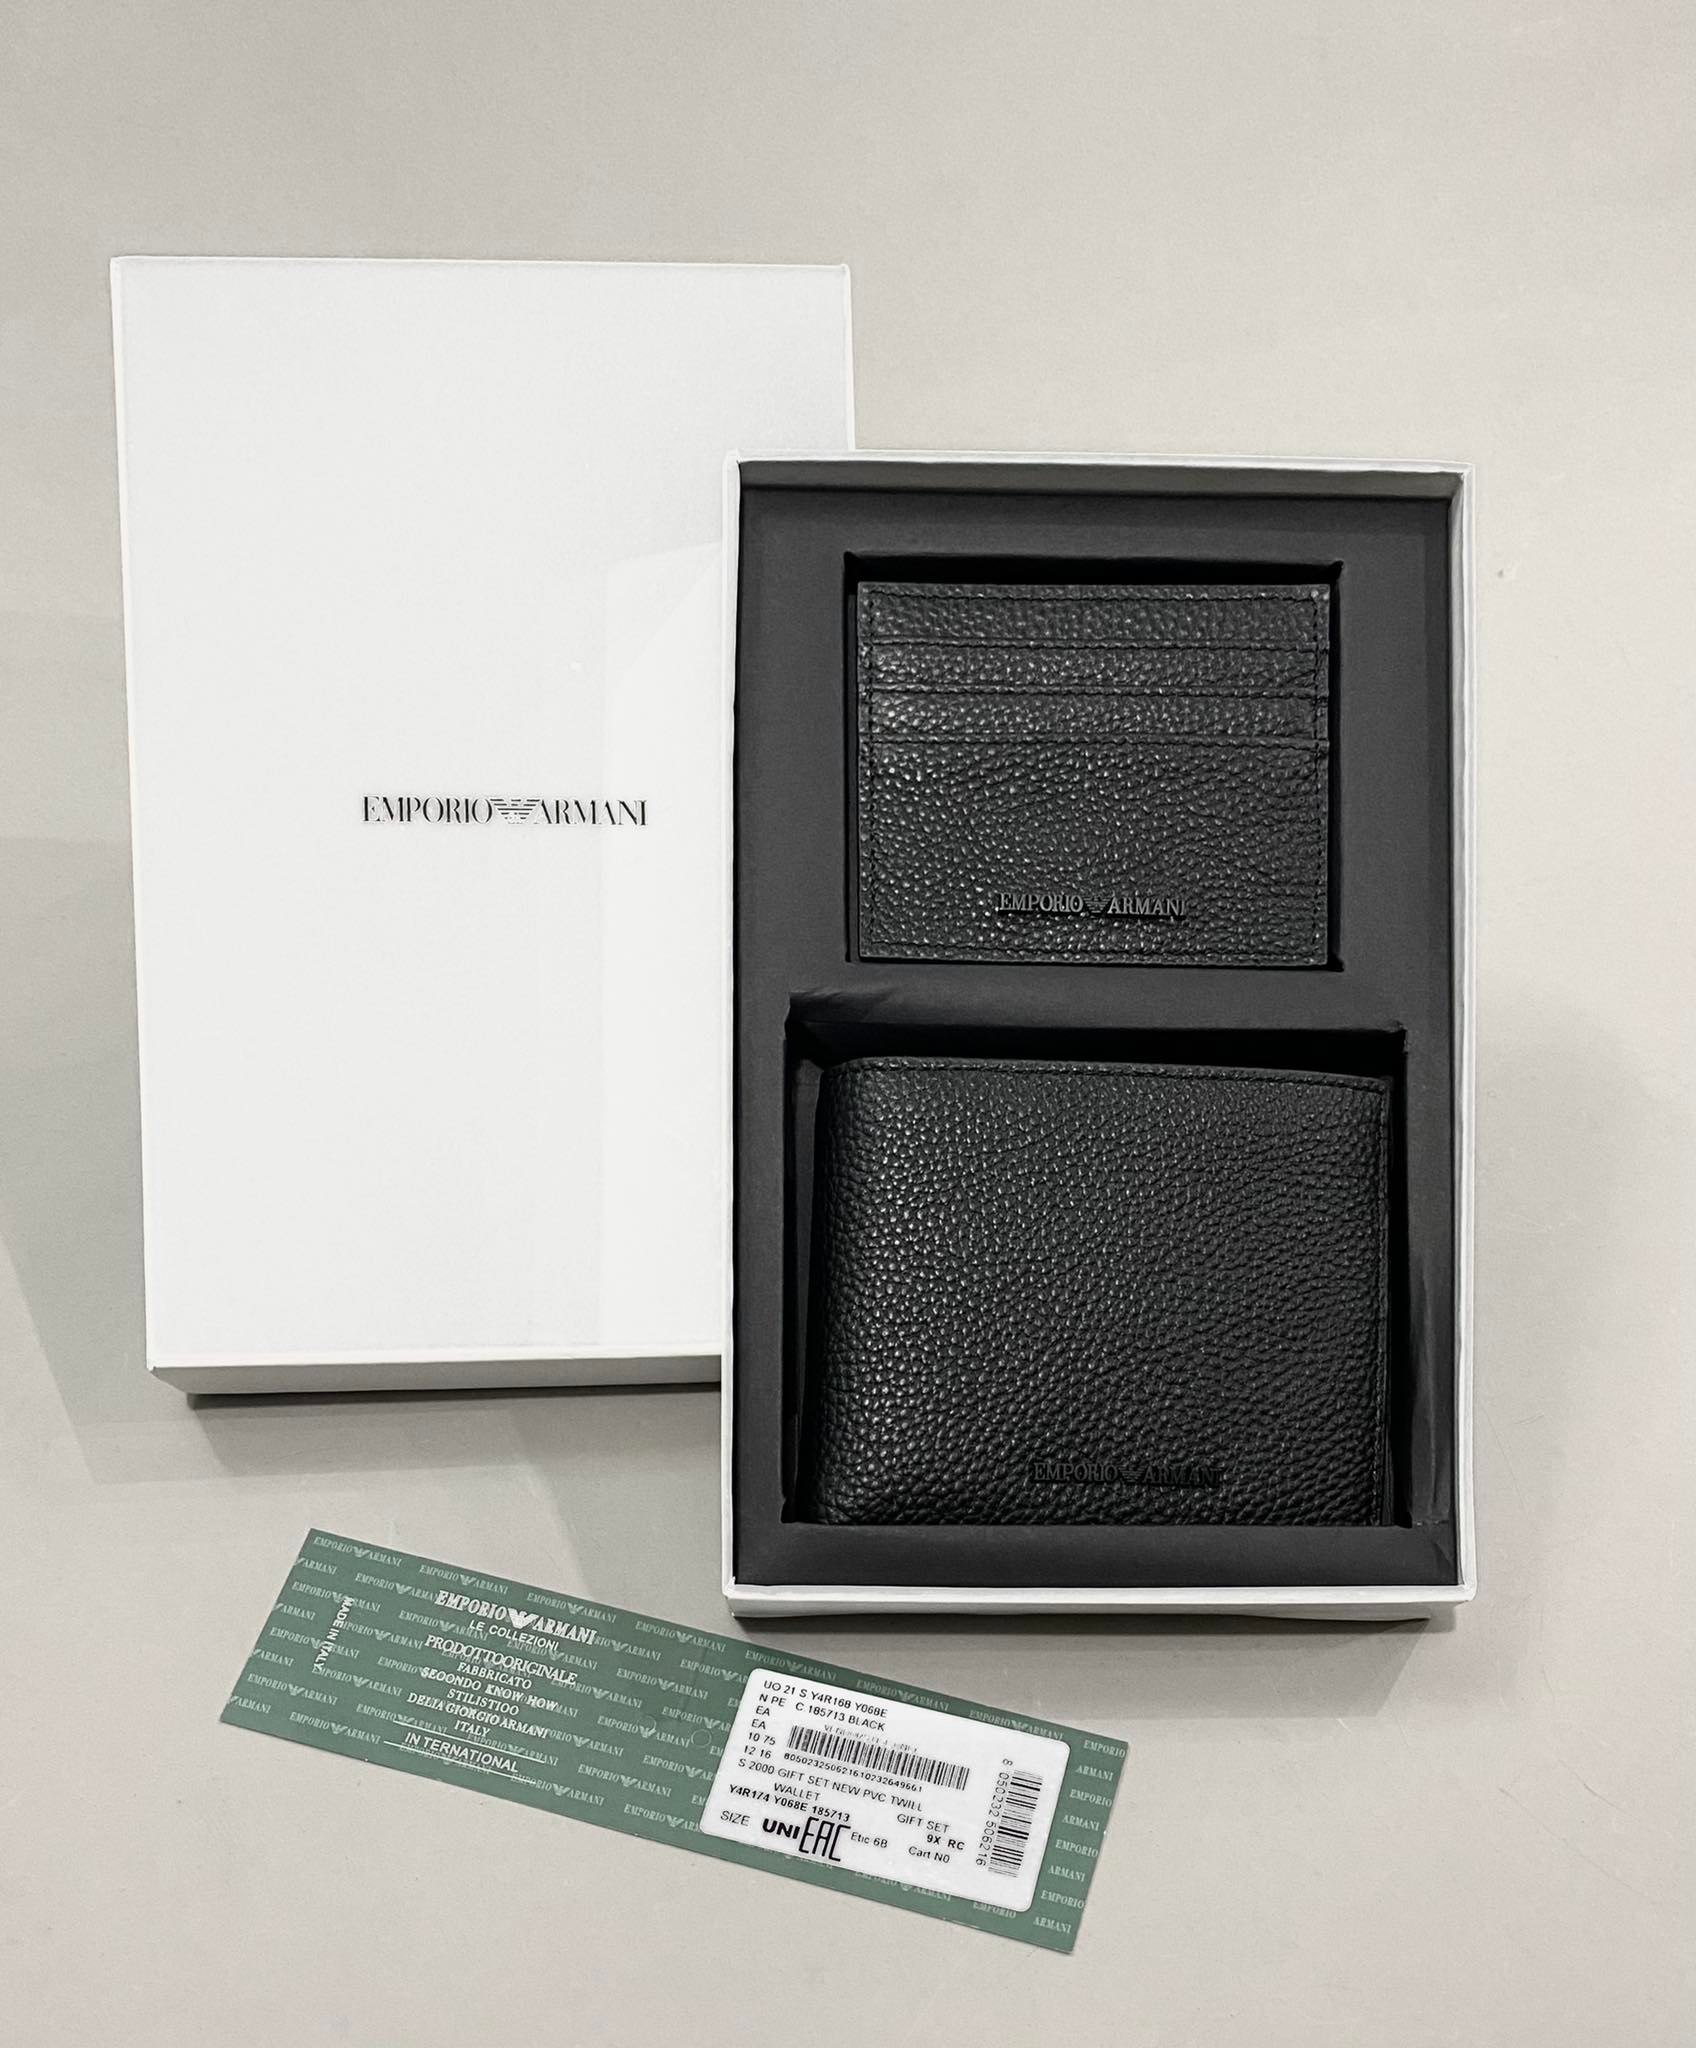 Phụ Kiện Chính Hãng - Sét Ví Emporio Armani Gift Set New Twill Wallet Đen - Y4R174